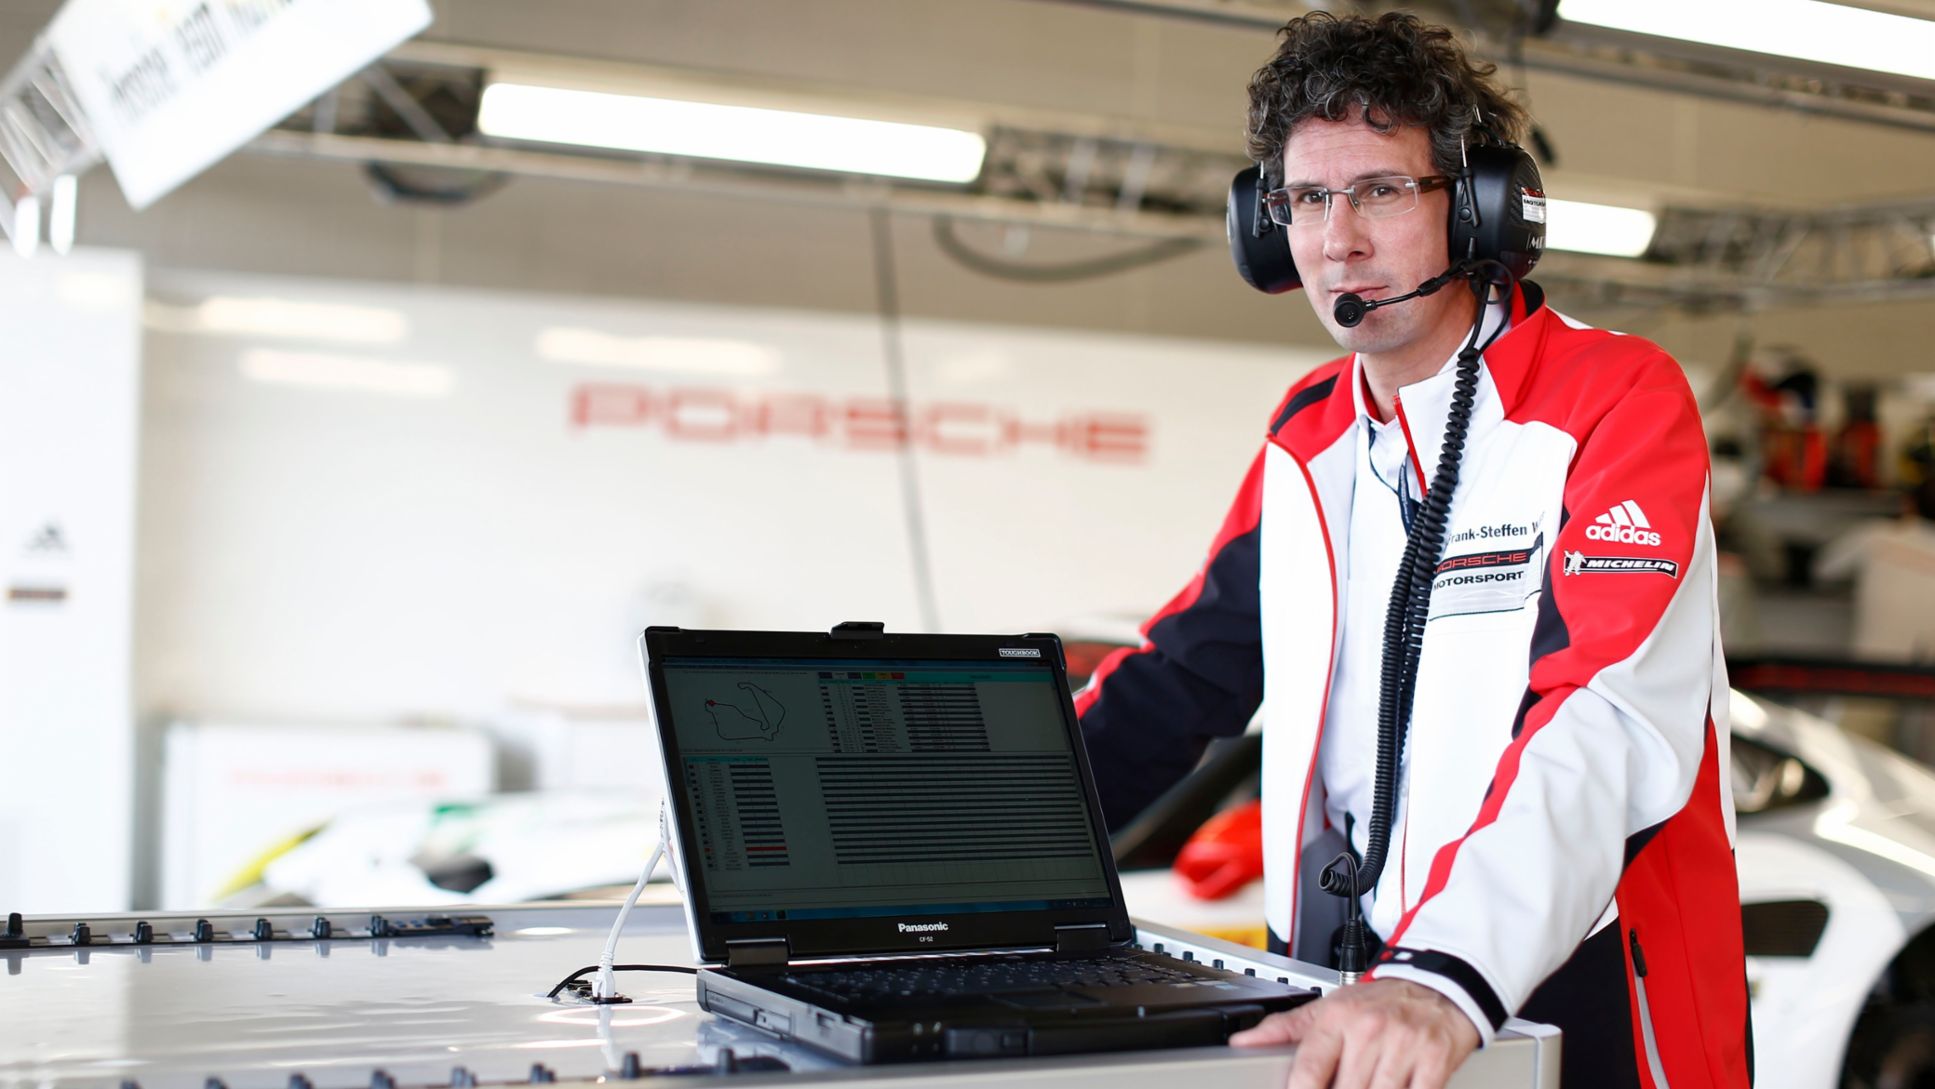 Dr. Frank Steffen Walliser, Porsche-Motorsportchef, 2015, Porsche AG